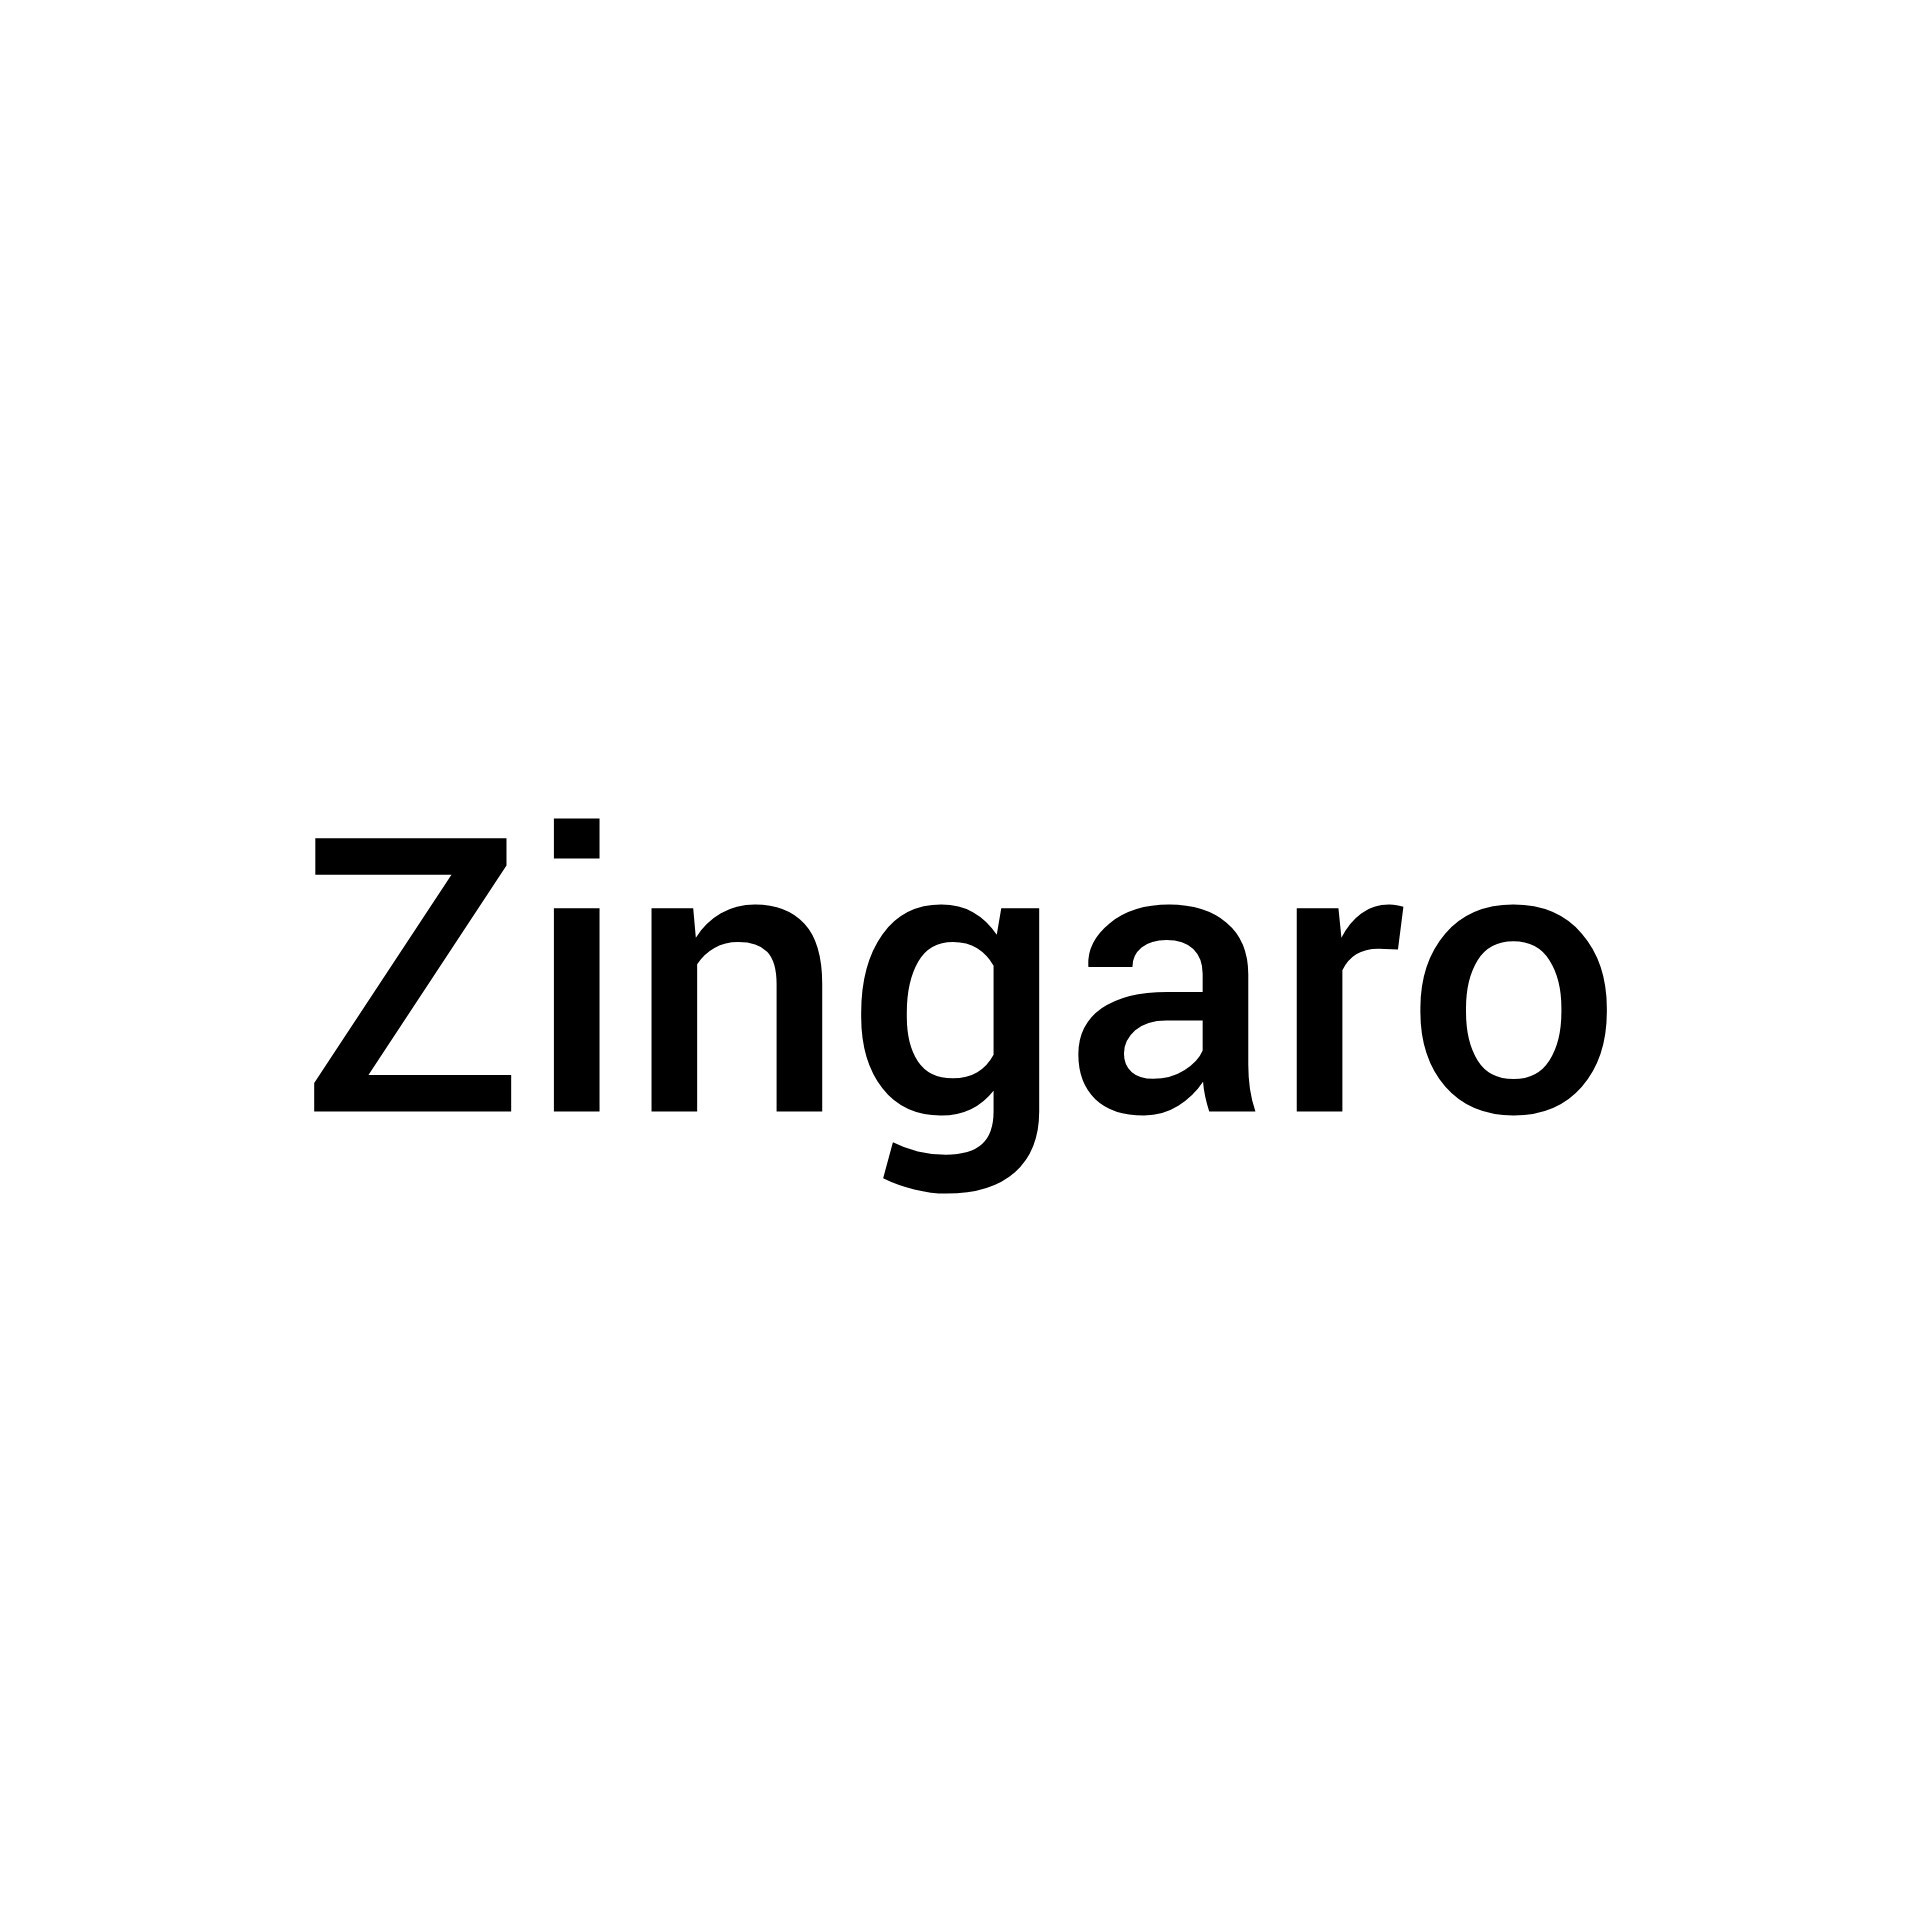 Zingaro